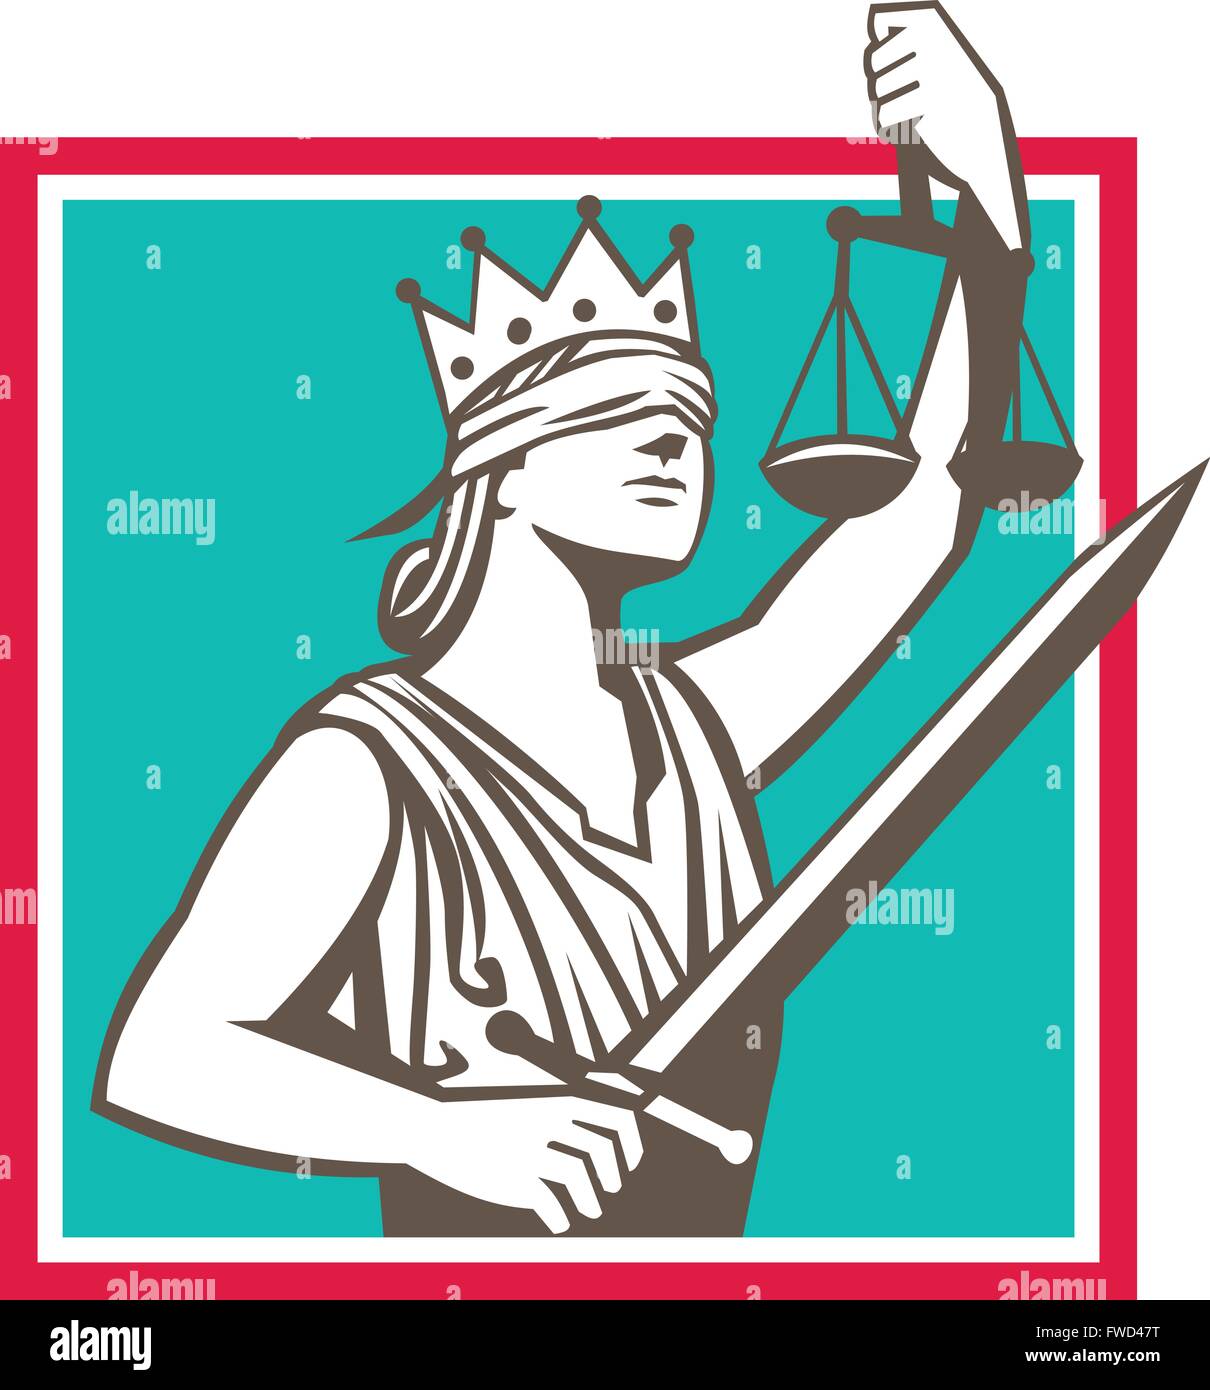 Illustrazione di una signora della giustizia con la corona e gli occhi bendati la spada e sollevamento scale imposta all'interno di forma quadrata fatto in stile retrò. Illustrazione Vettoriale